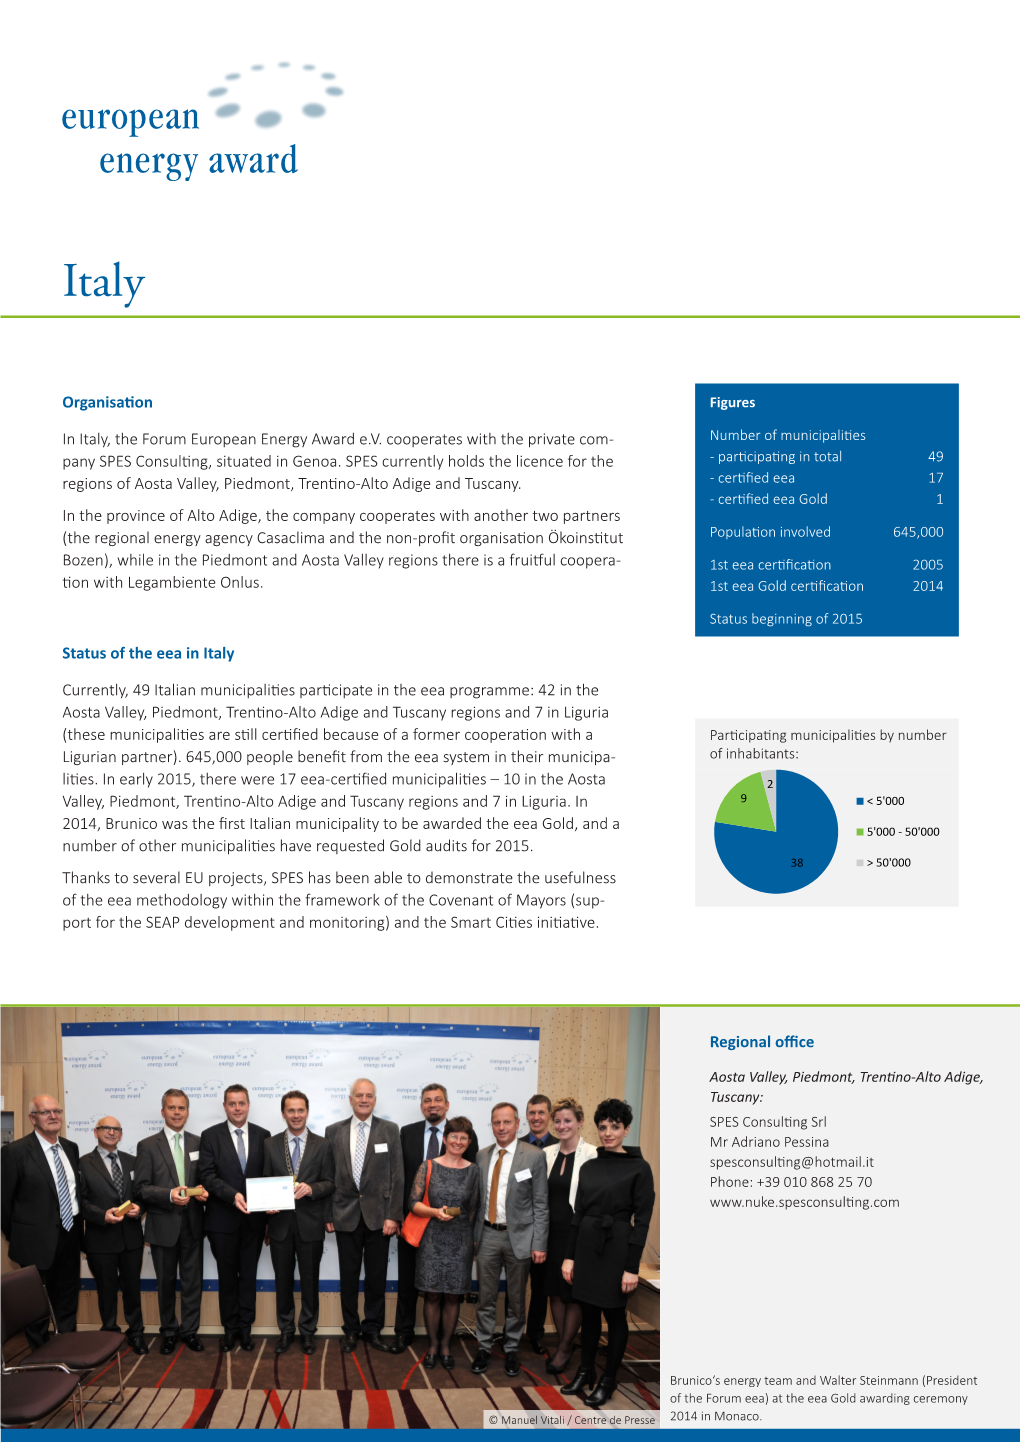 Organisation in Italy, the Forum European Energy Award E.V